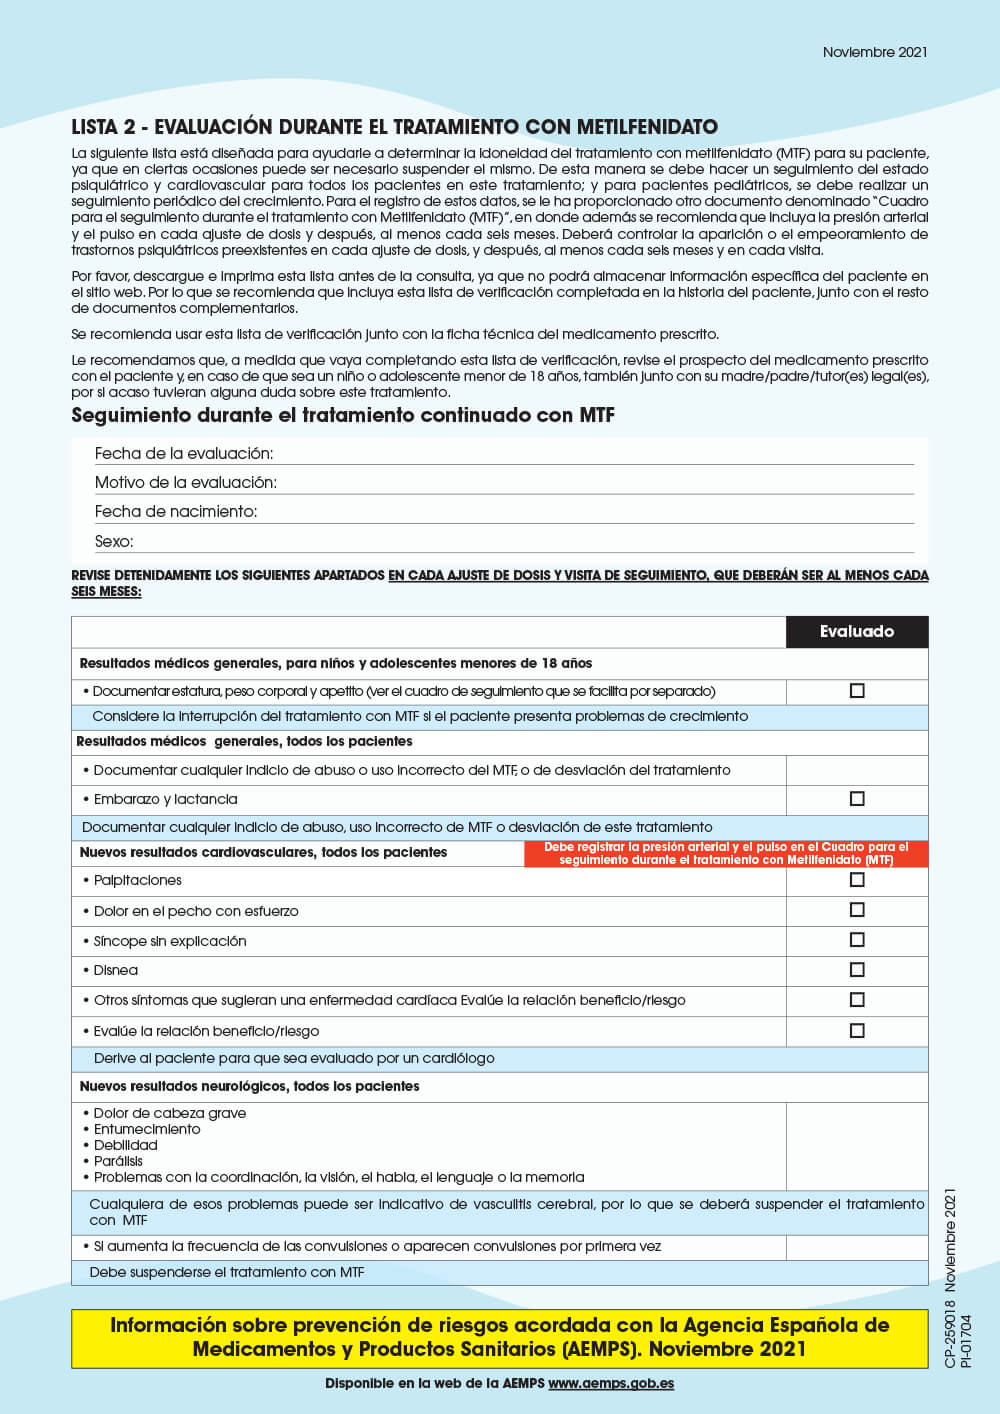 Vista preliminar: Lista 2: Evaluación durante el tratamiento con metilfenidato (MTF)